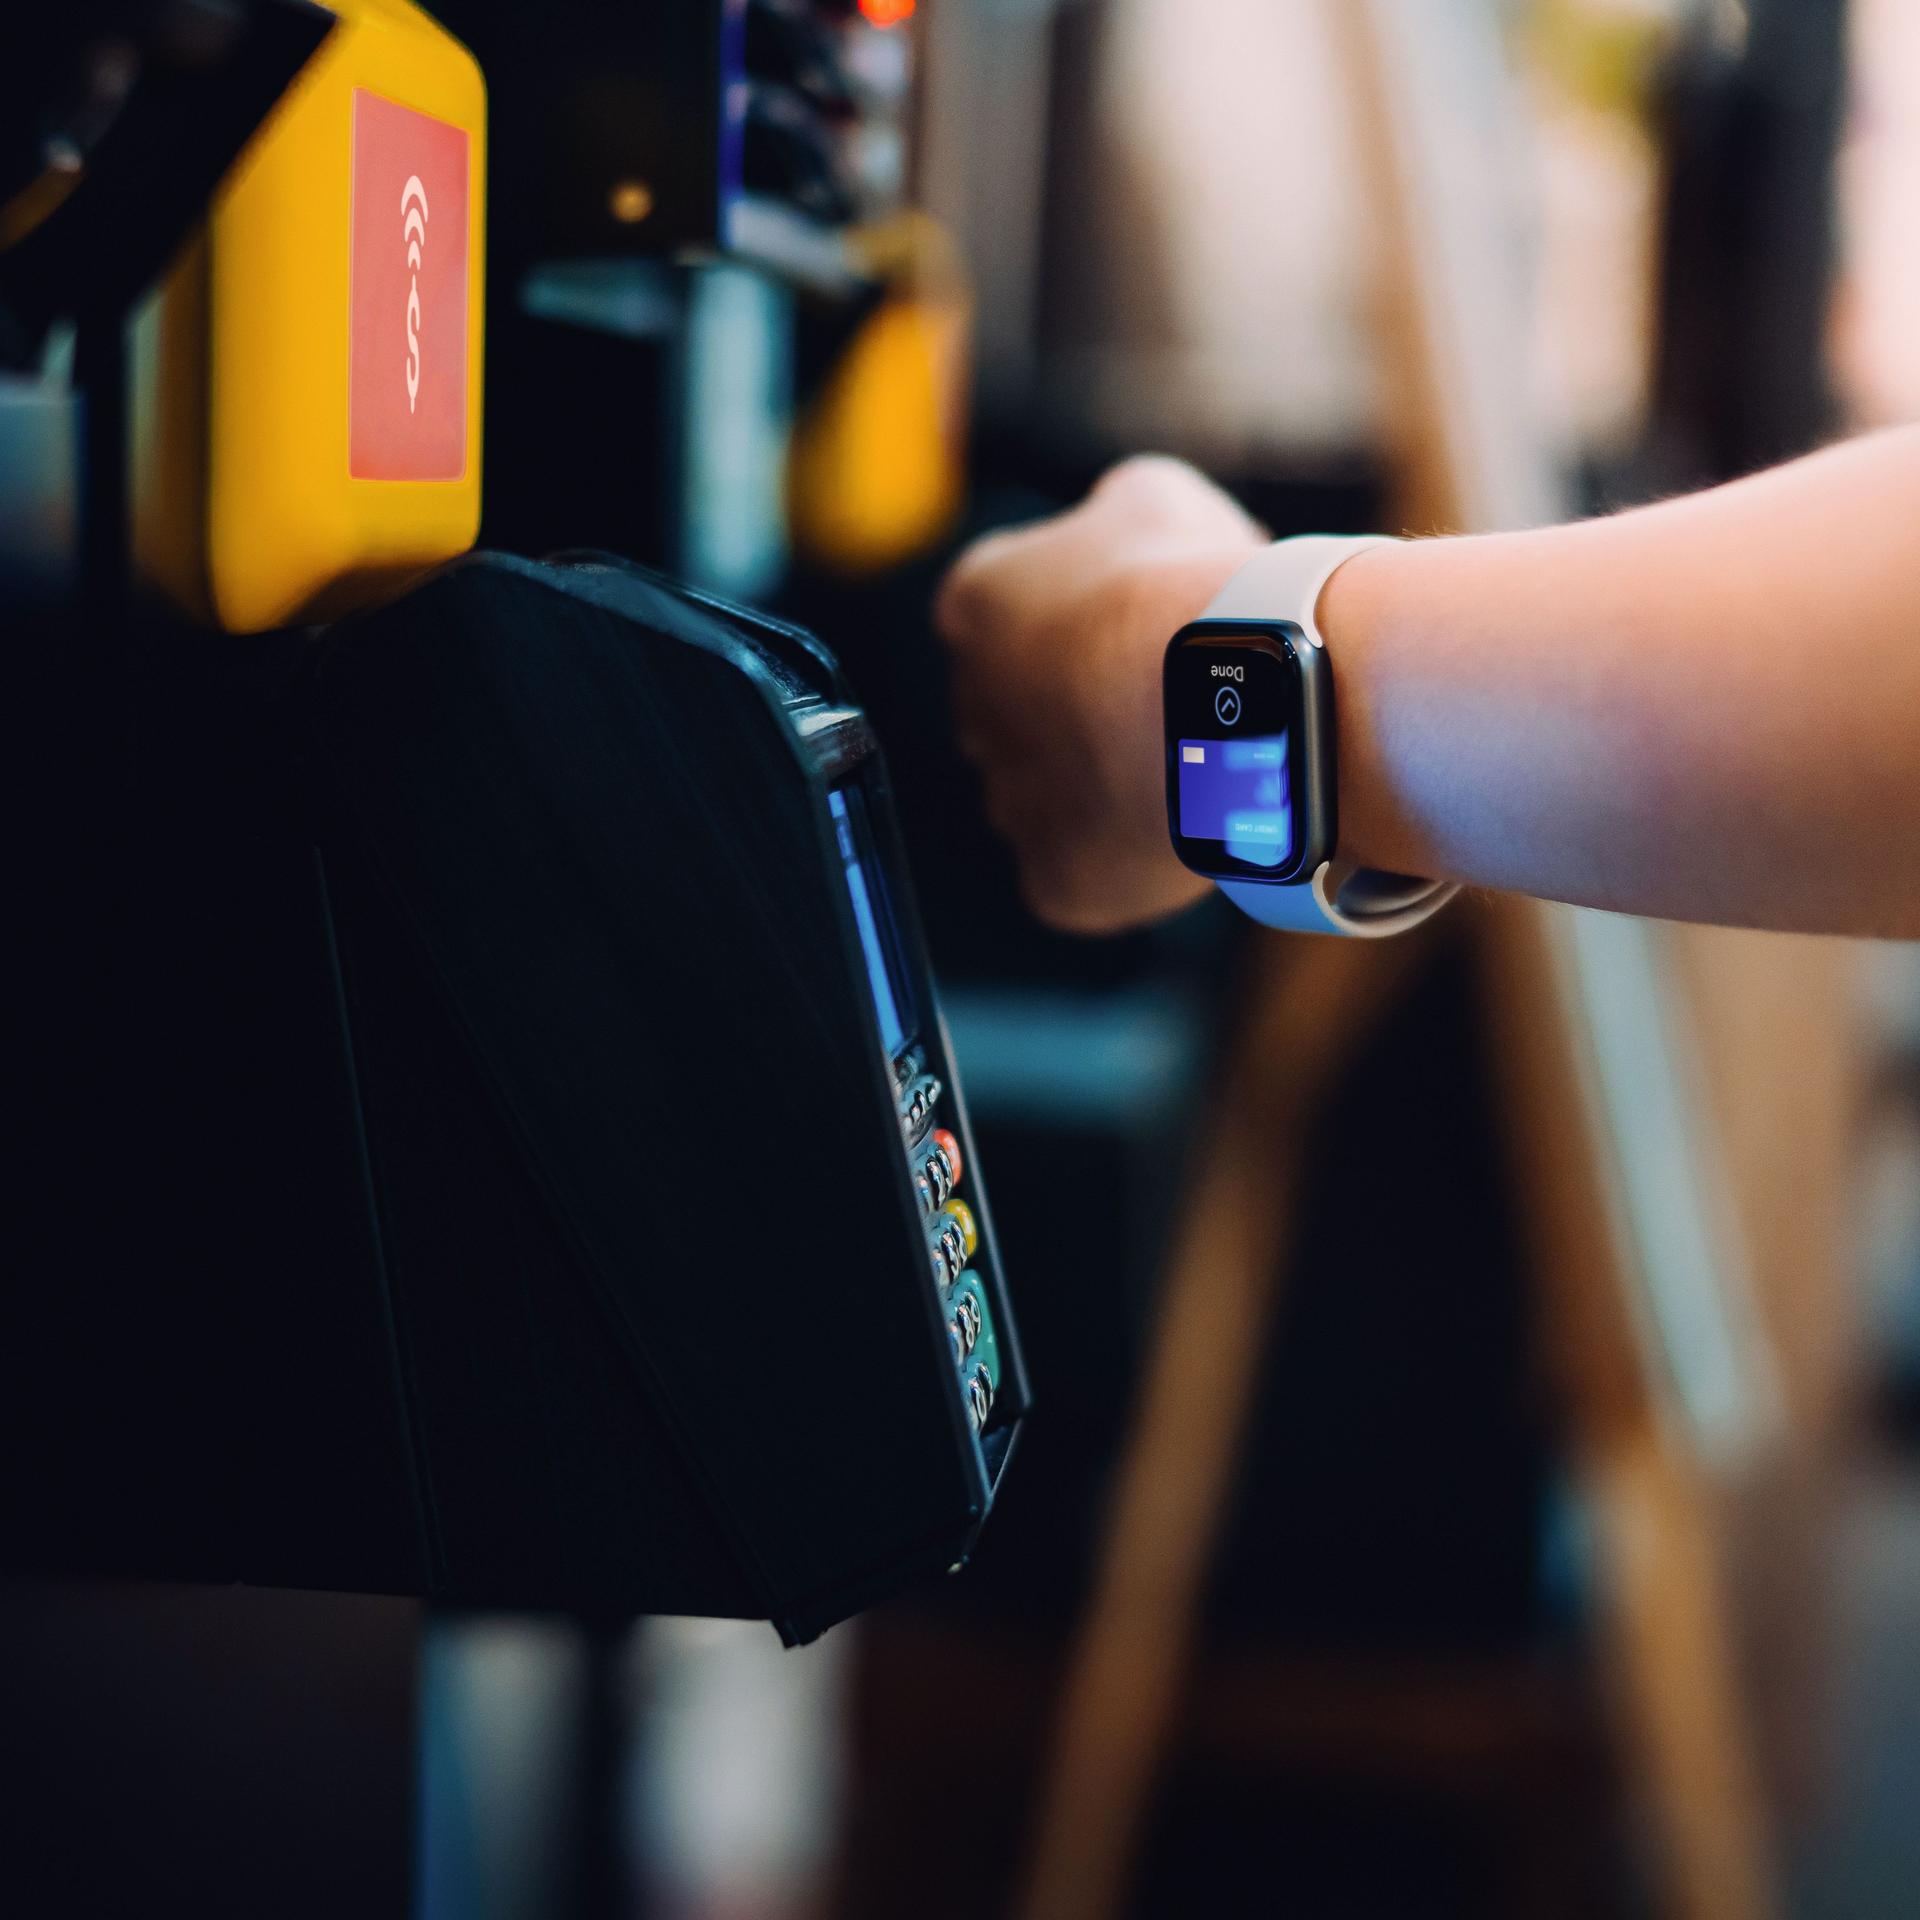 Nahaufnahme eines Handgelenks mit Smartwatch, die zum Bezahlen verwendet wird.